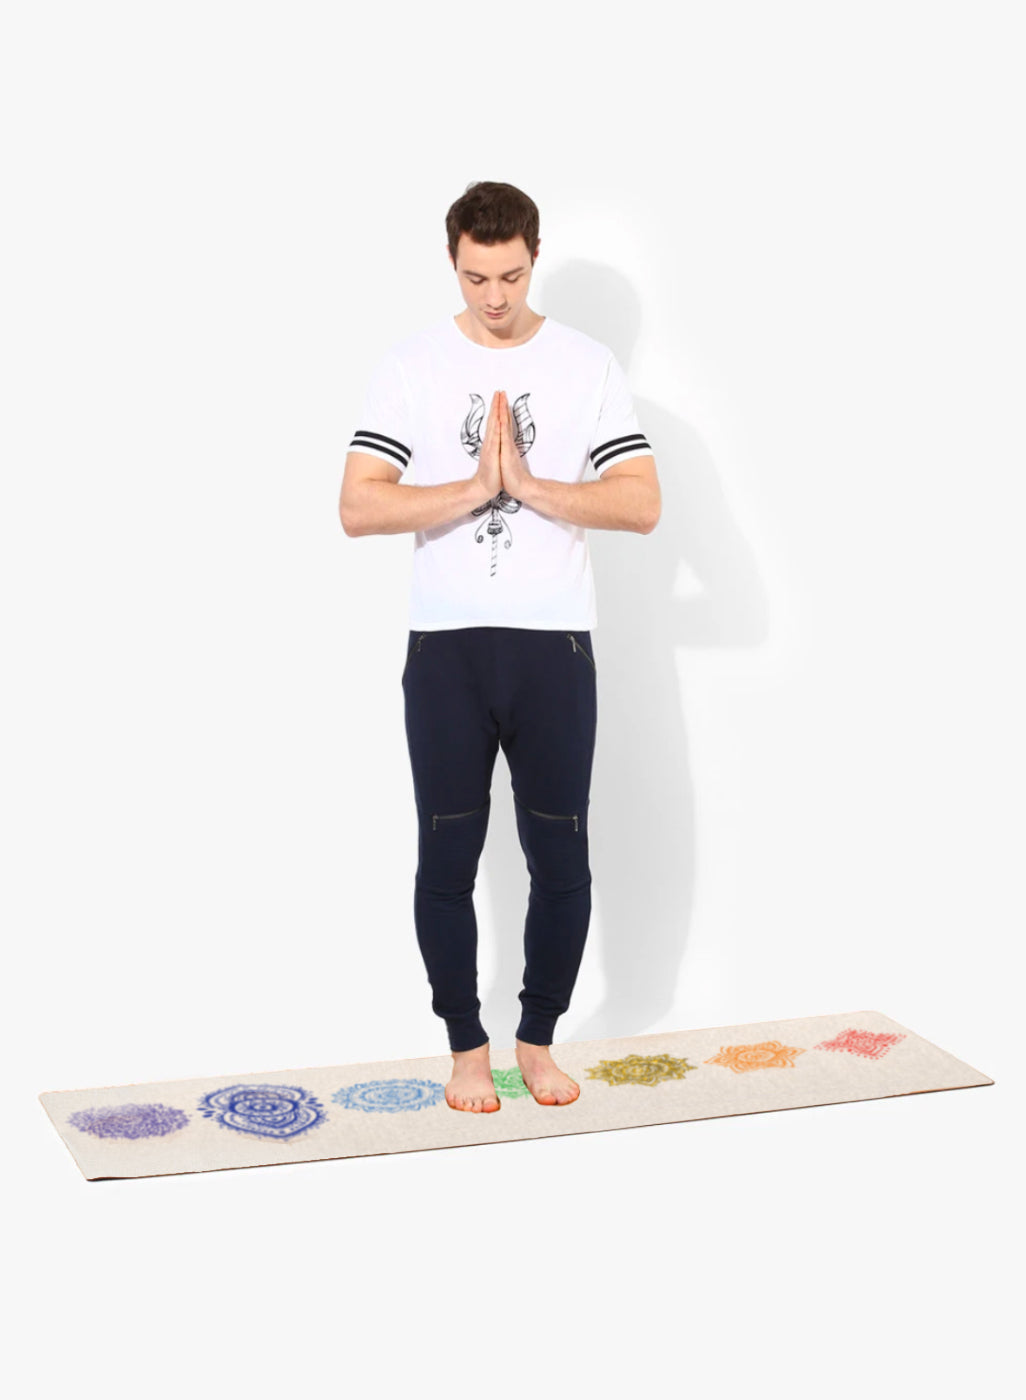 Hemp Yoga Mat - Sahasrara